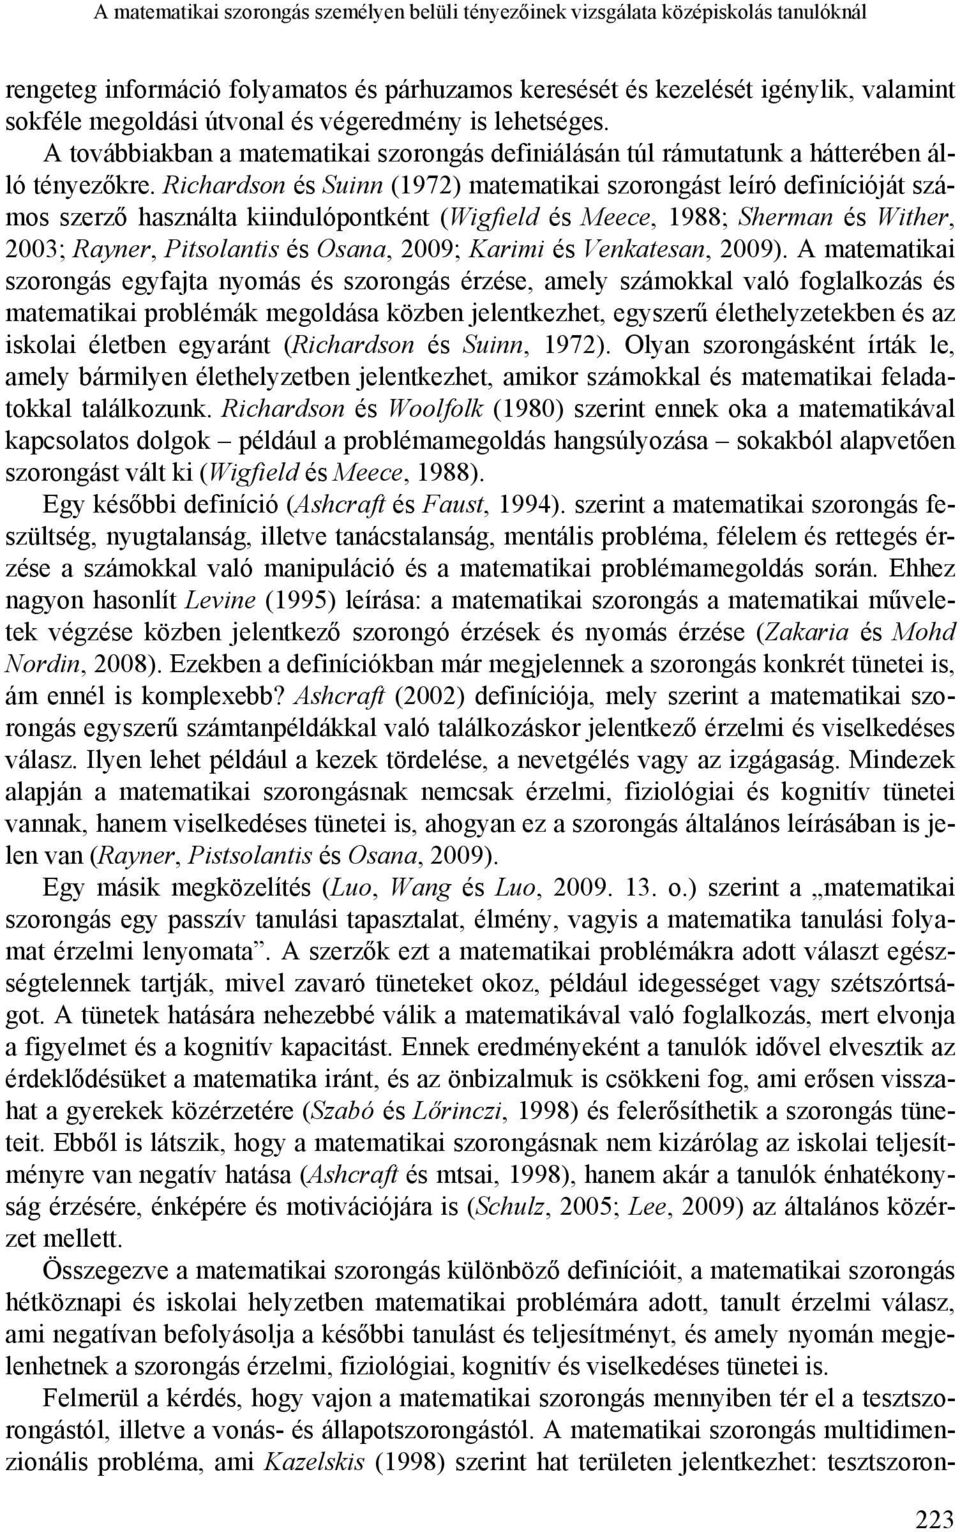 Richardson és Suinn (1972) matematikai szorongást leíró definícióját számos szerző használta kiindulópontként (Wigfield és Meece, 1988; Sherman és Wither, 2003; Rayner, Pitsolantis és Osana, 2009;